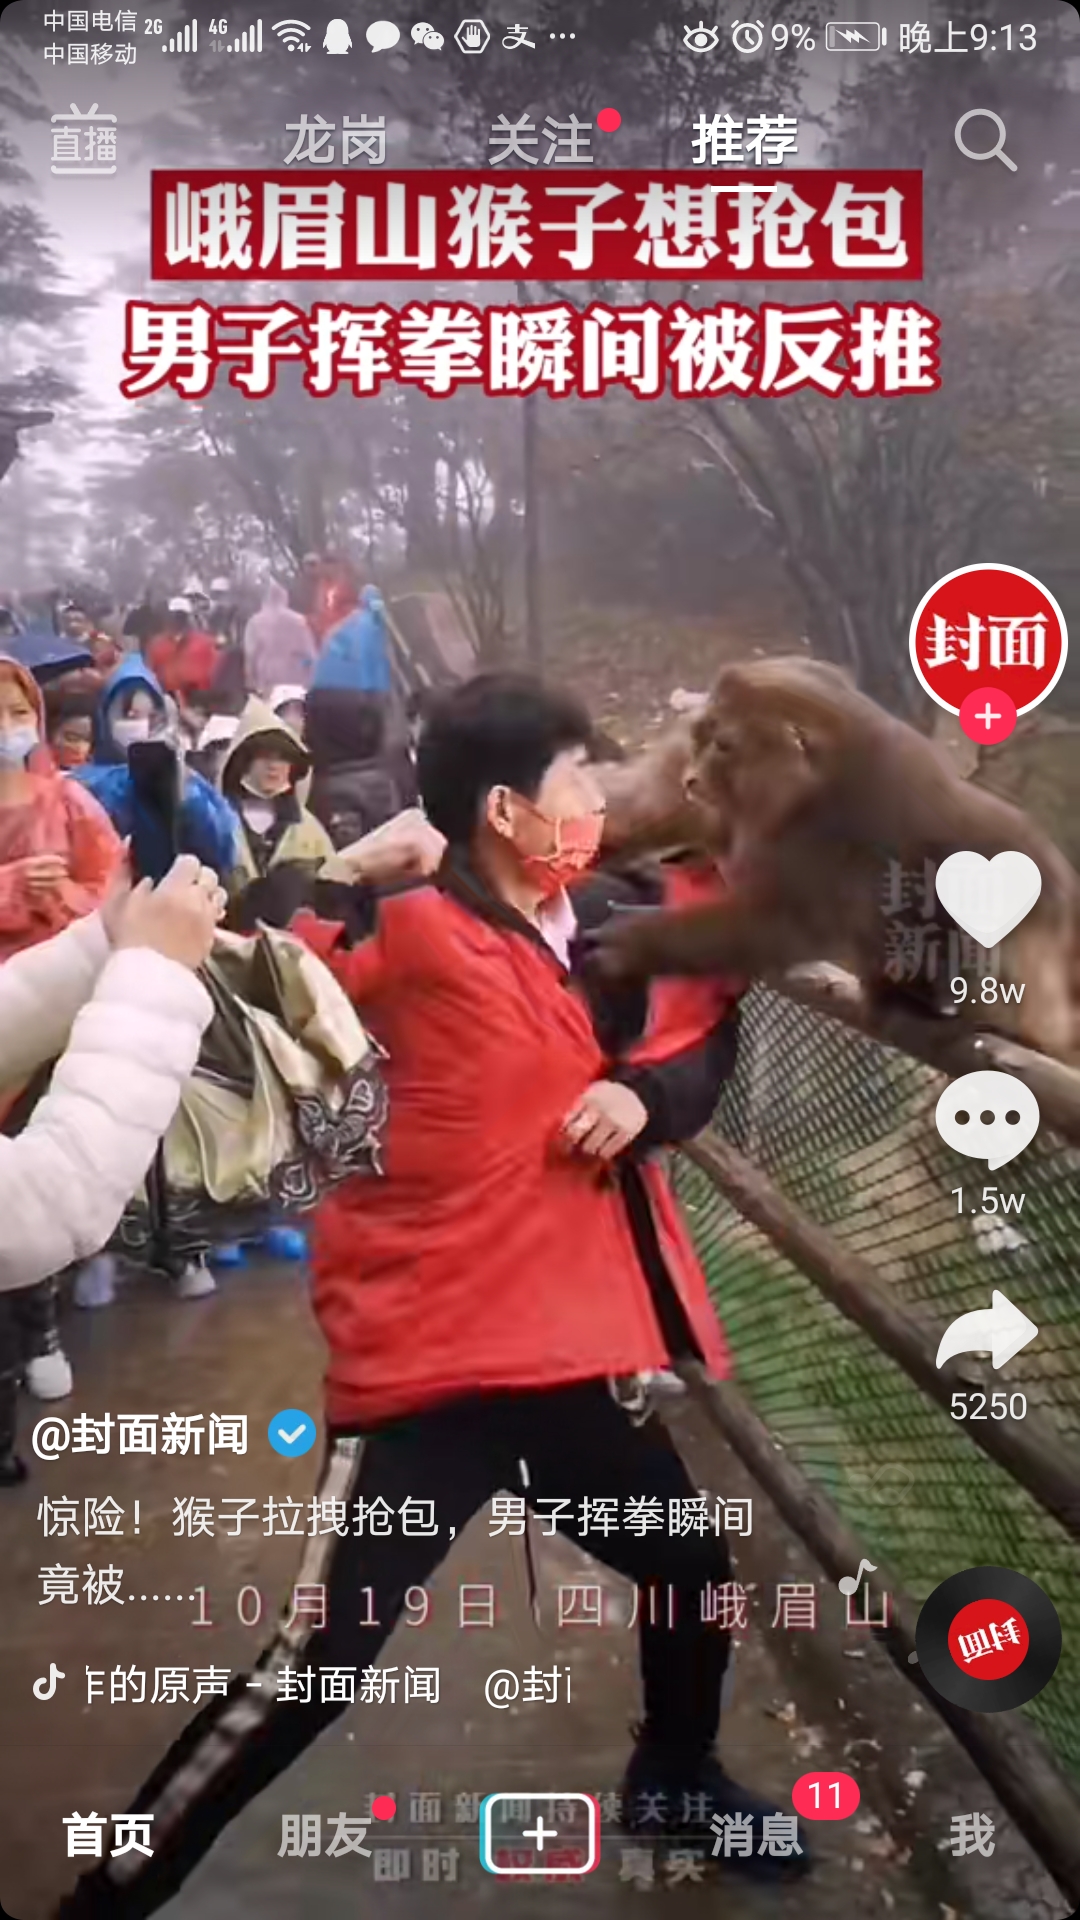 猴子抢夺游客包挥拳反被猴子强推